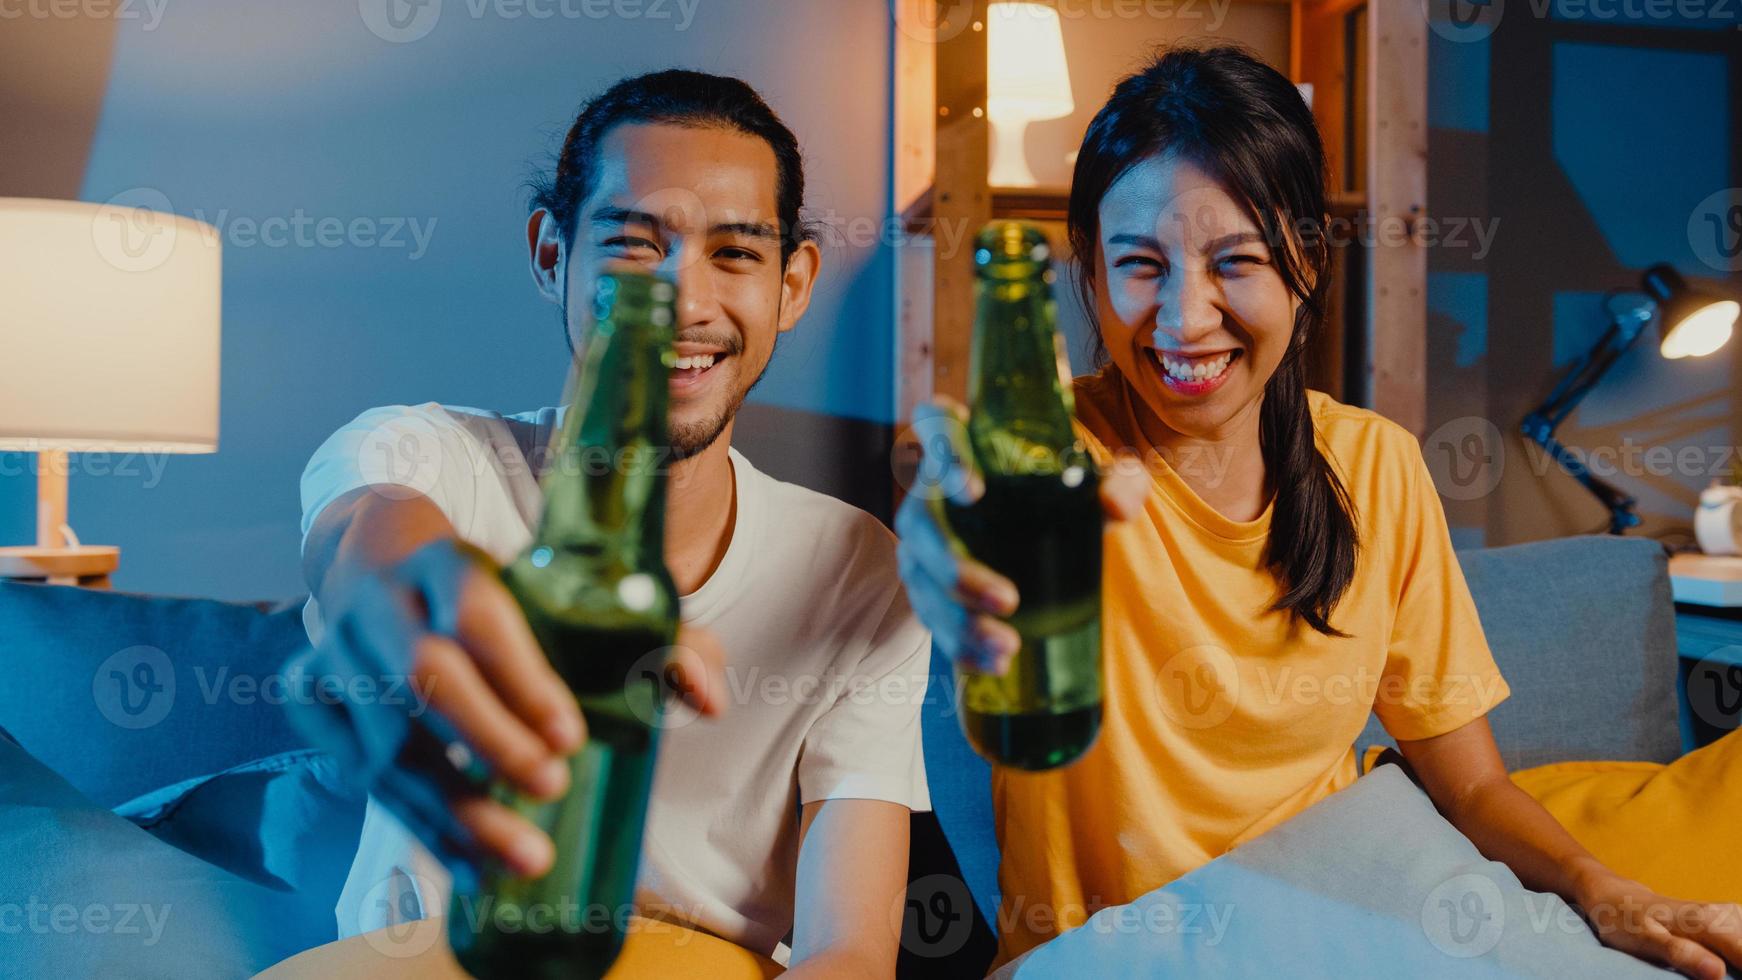 glada unga asiatiska par tittar på kameran njuta av nattfest händelse online sitta soffan videosamtal med vänner toast dricka öl via videosamtal online i vardagsrummet hemma, social distansering koncept. foto